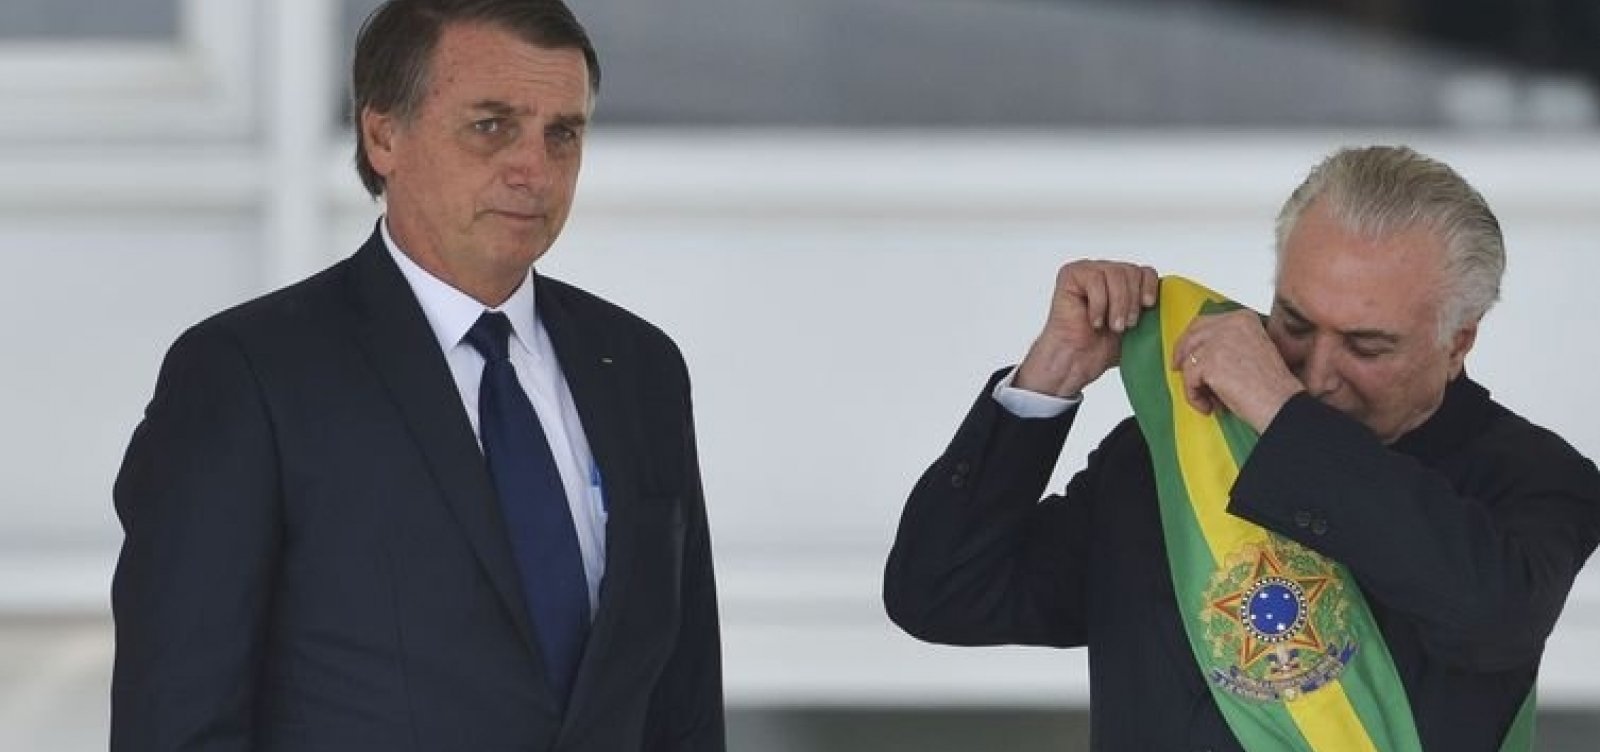 'Governo Bolsonaro vai bem porque está dando sequência ao meu', diz Temer